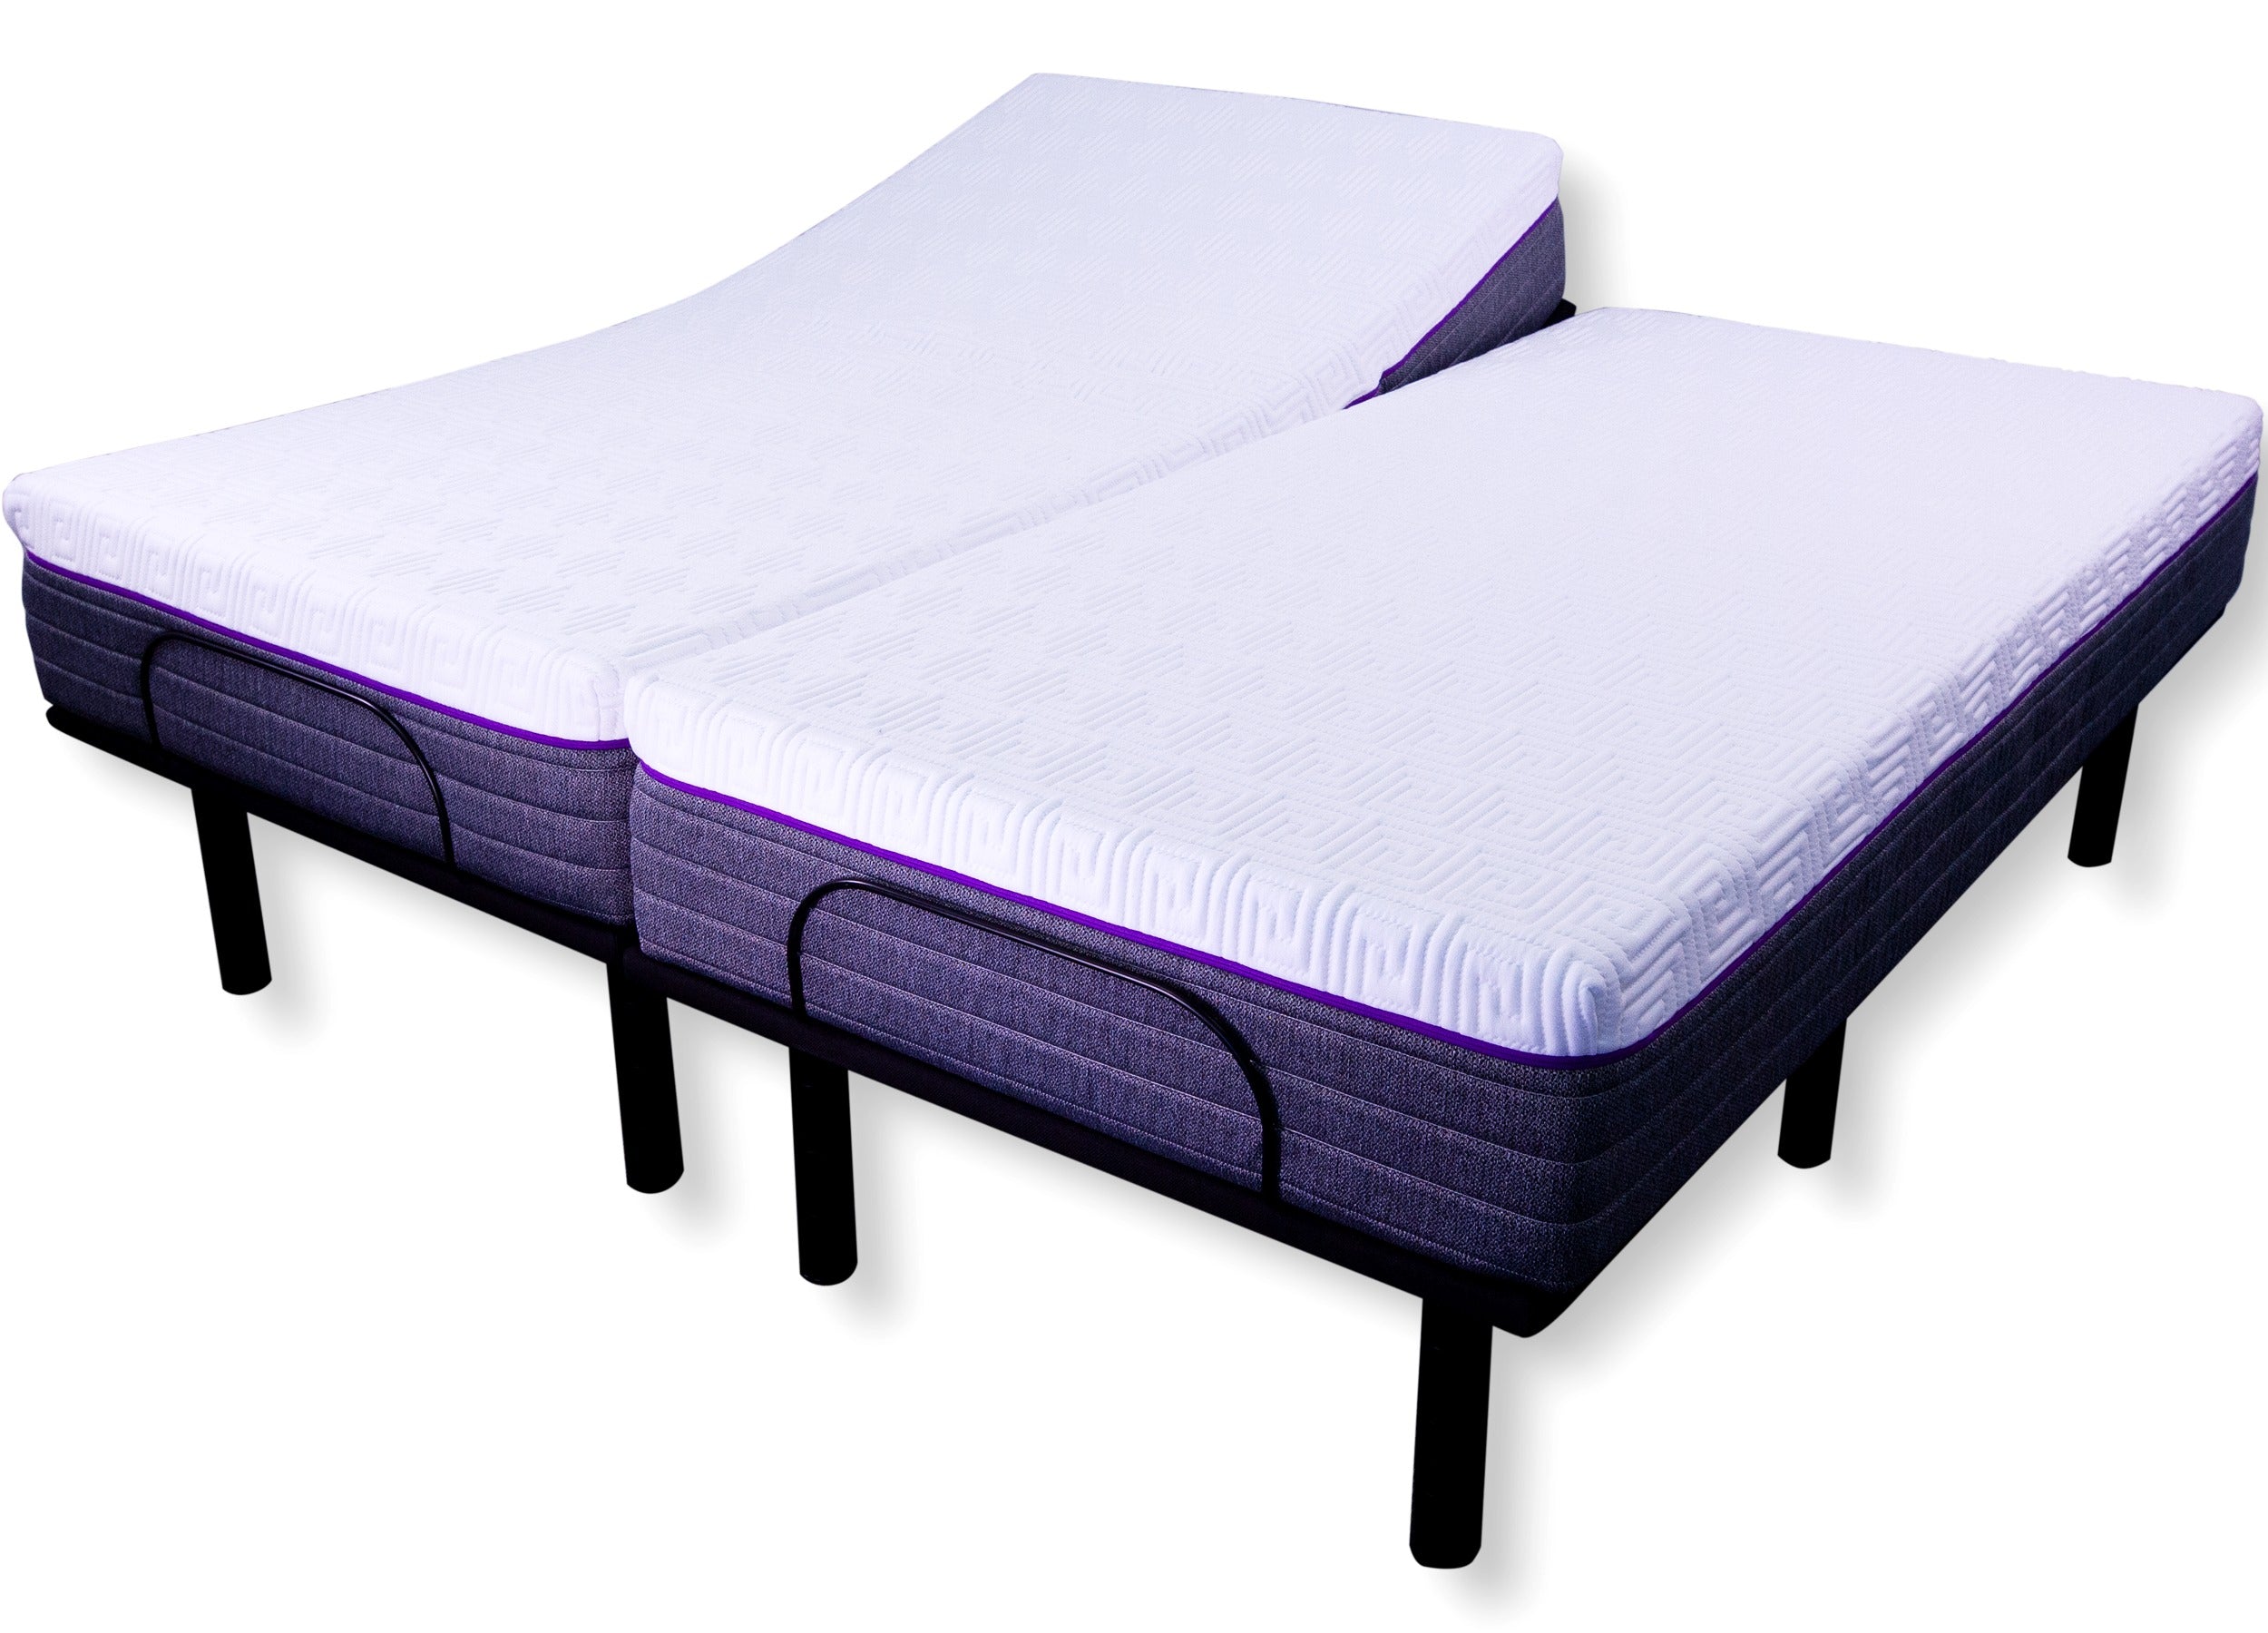 Crescendo Split King Adjustable Bed Package